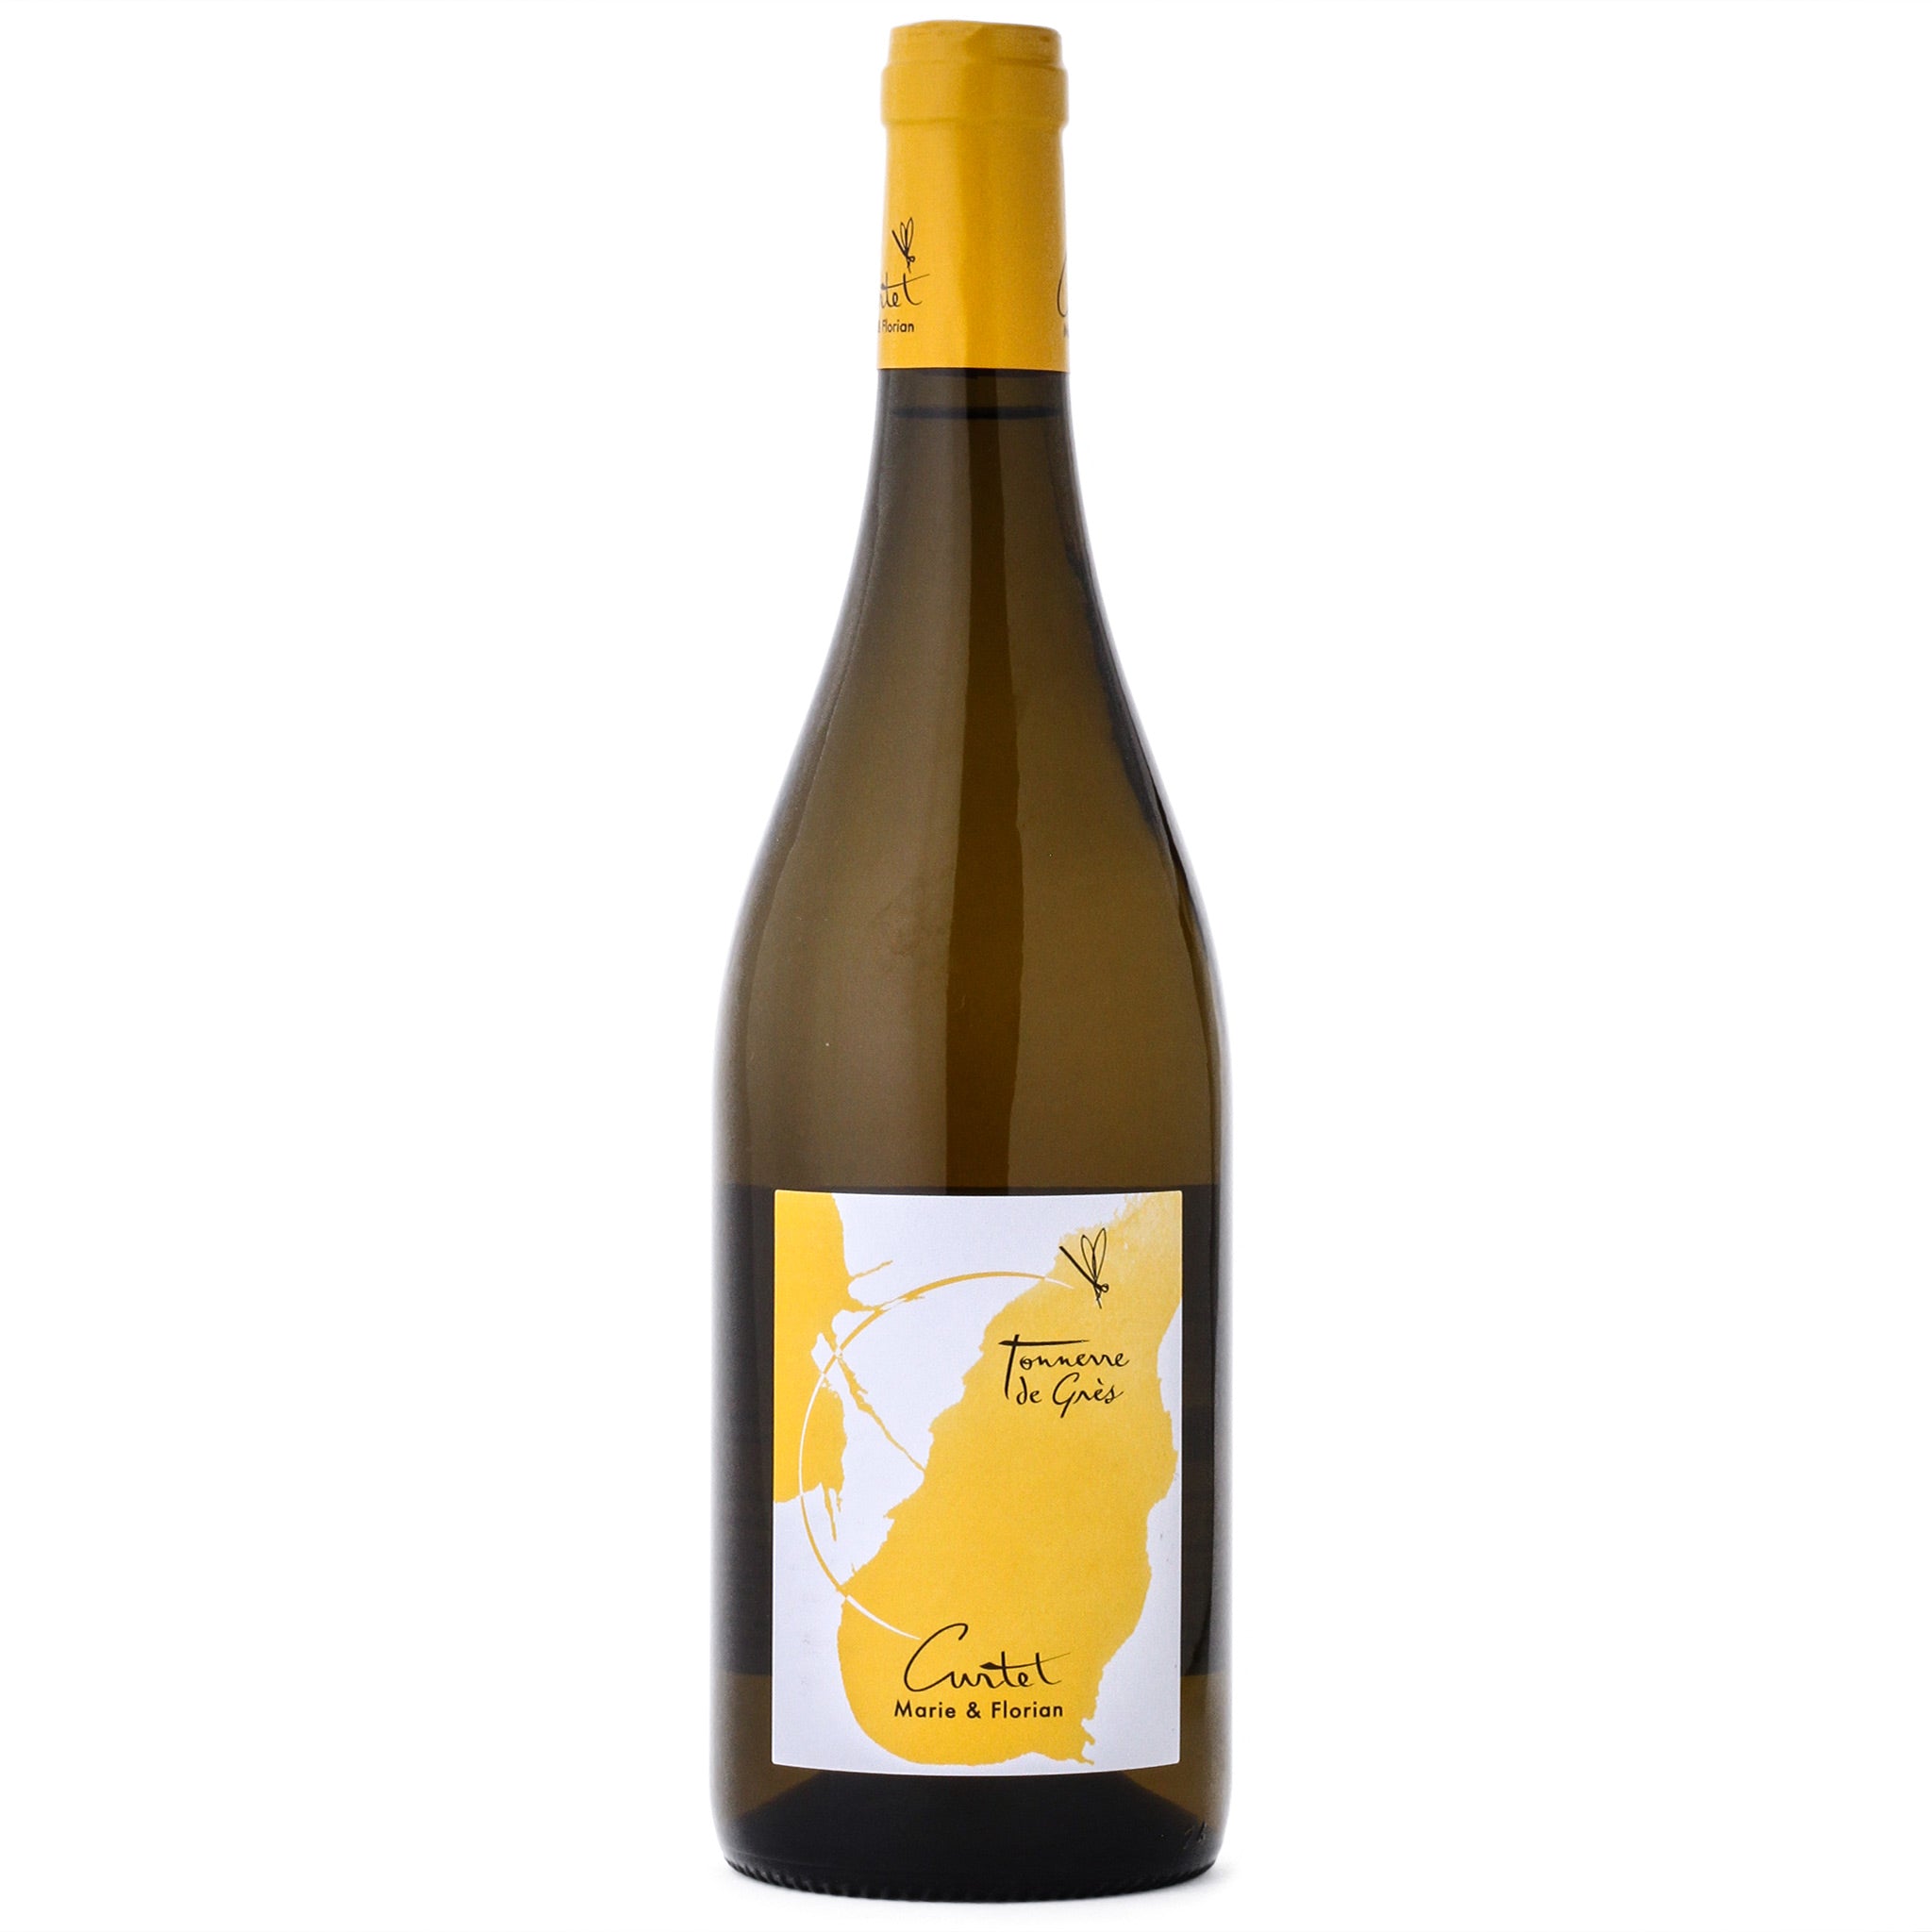 2019 Domaine Curtet “Tonnerre de Grès” Blanc – Golden Age Wine